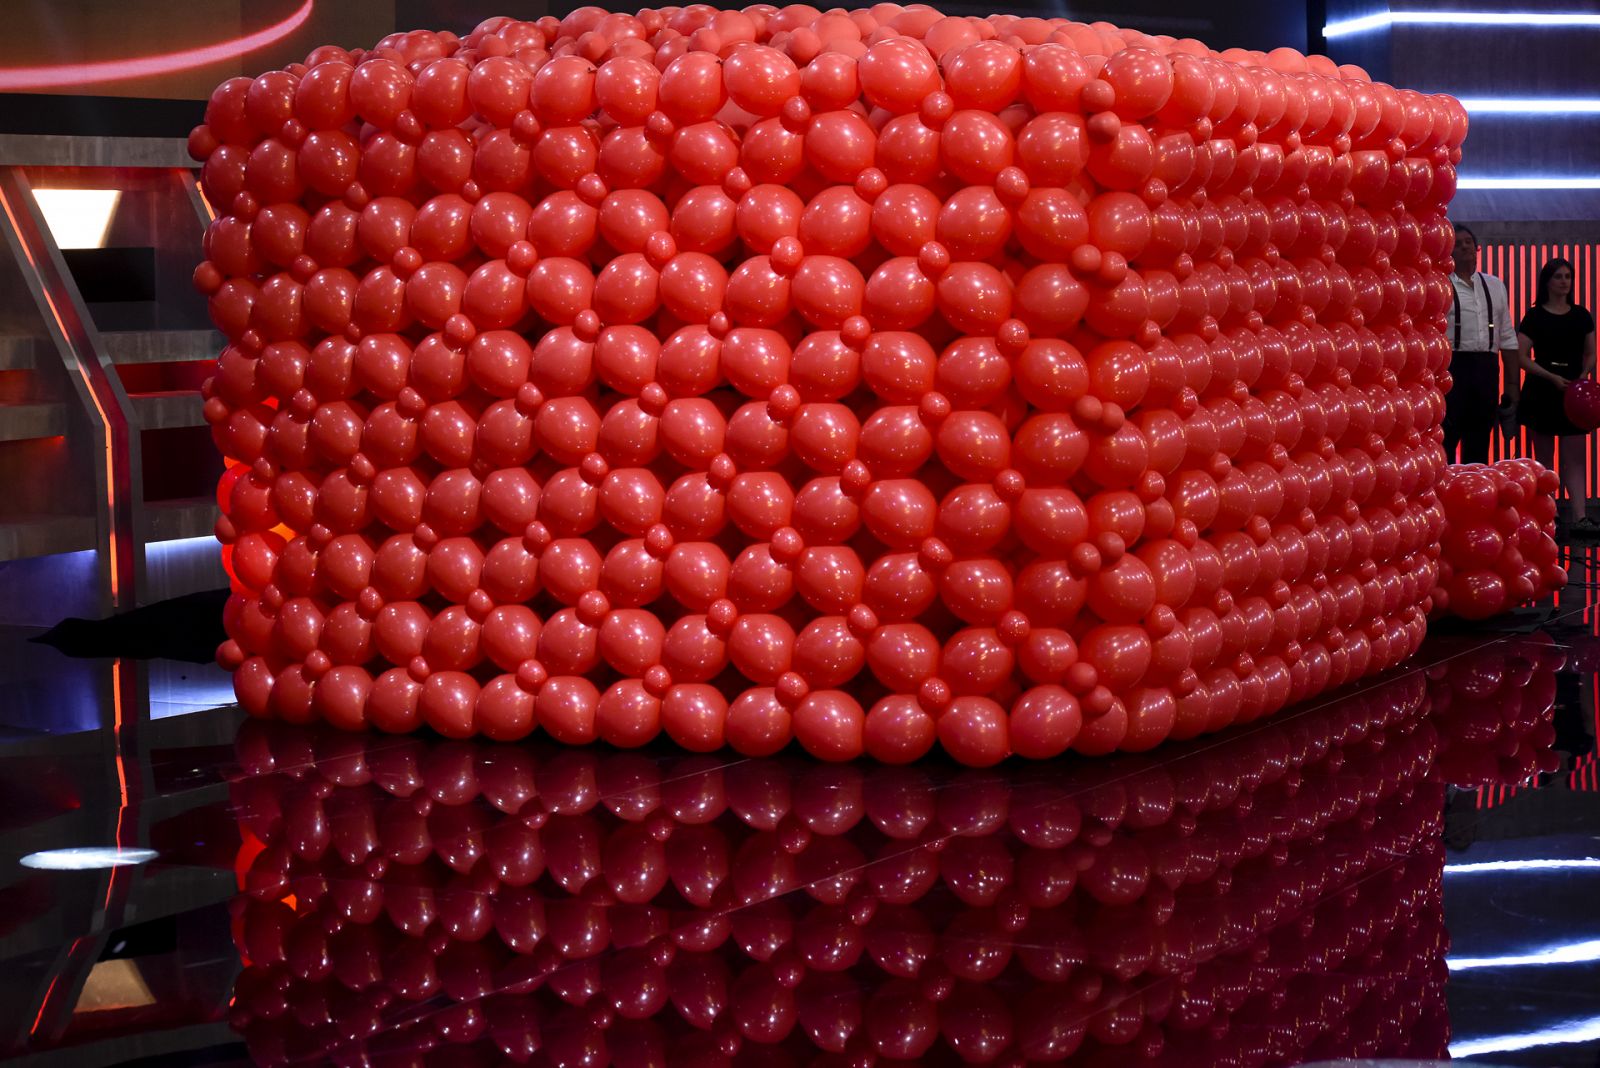 ¿Qué hará Pablo Ibáñez con 10.000 globos rojos?